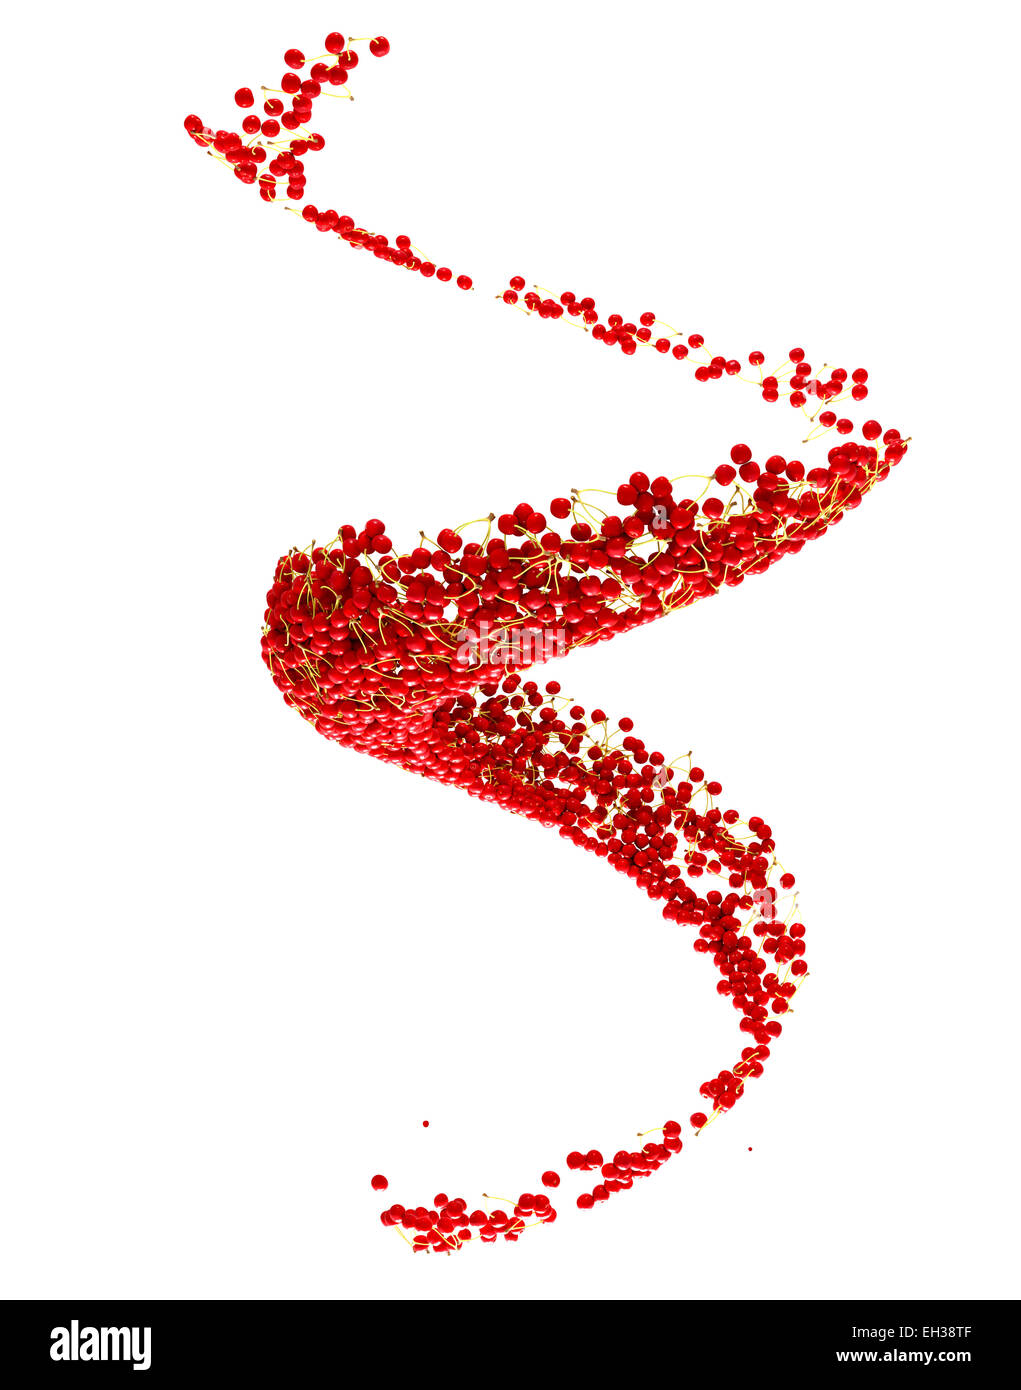 Récolte de fruits : cerise rouge flow isolé sur fond blanc Banque D'Images